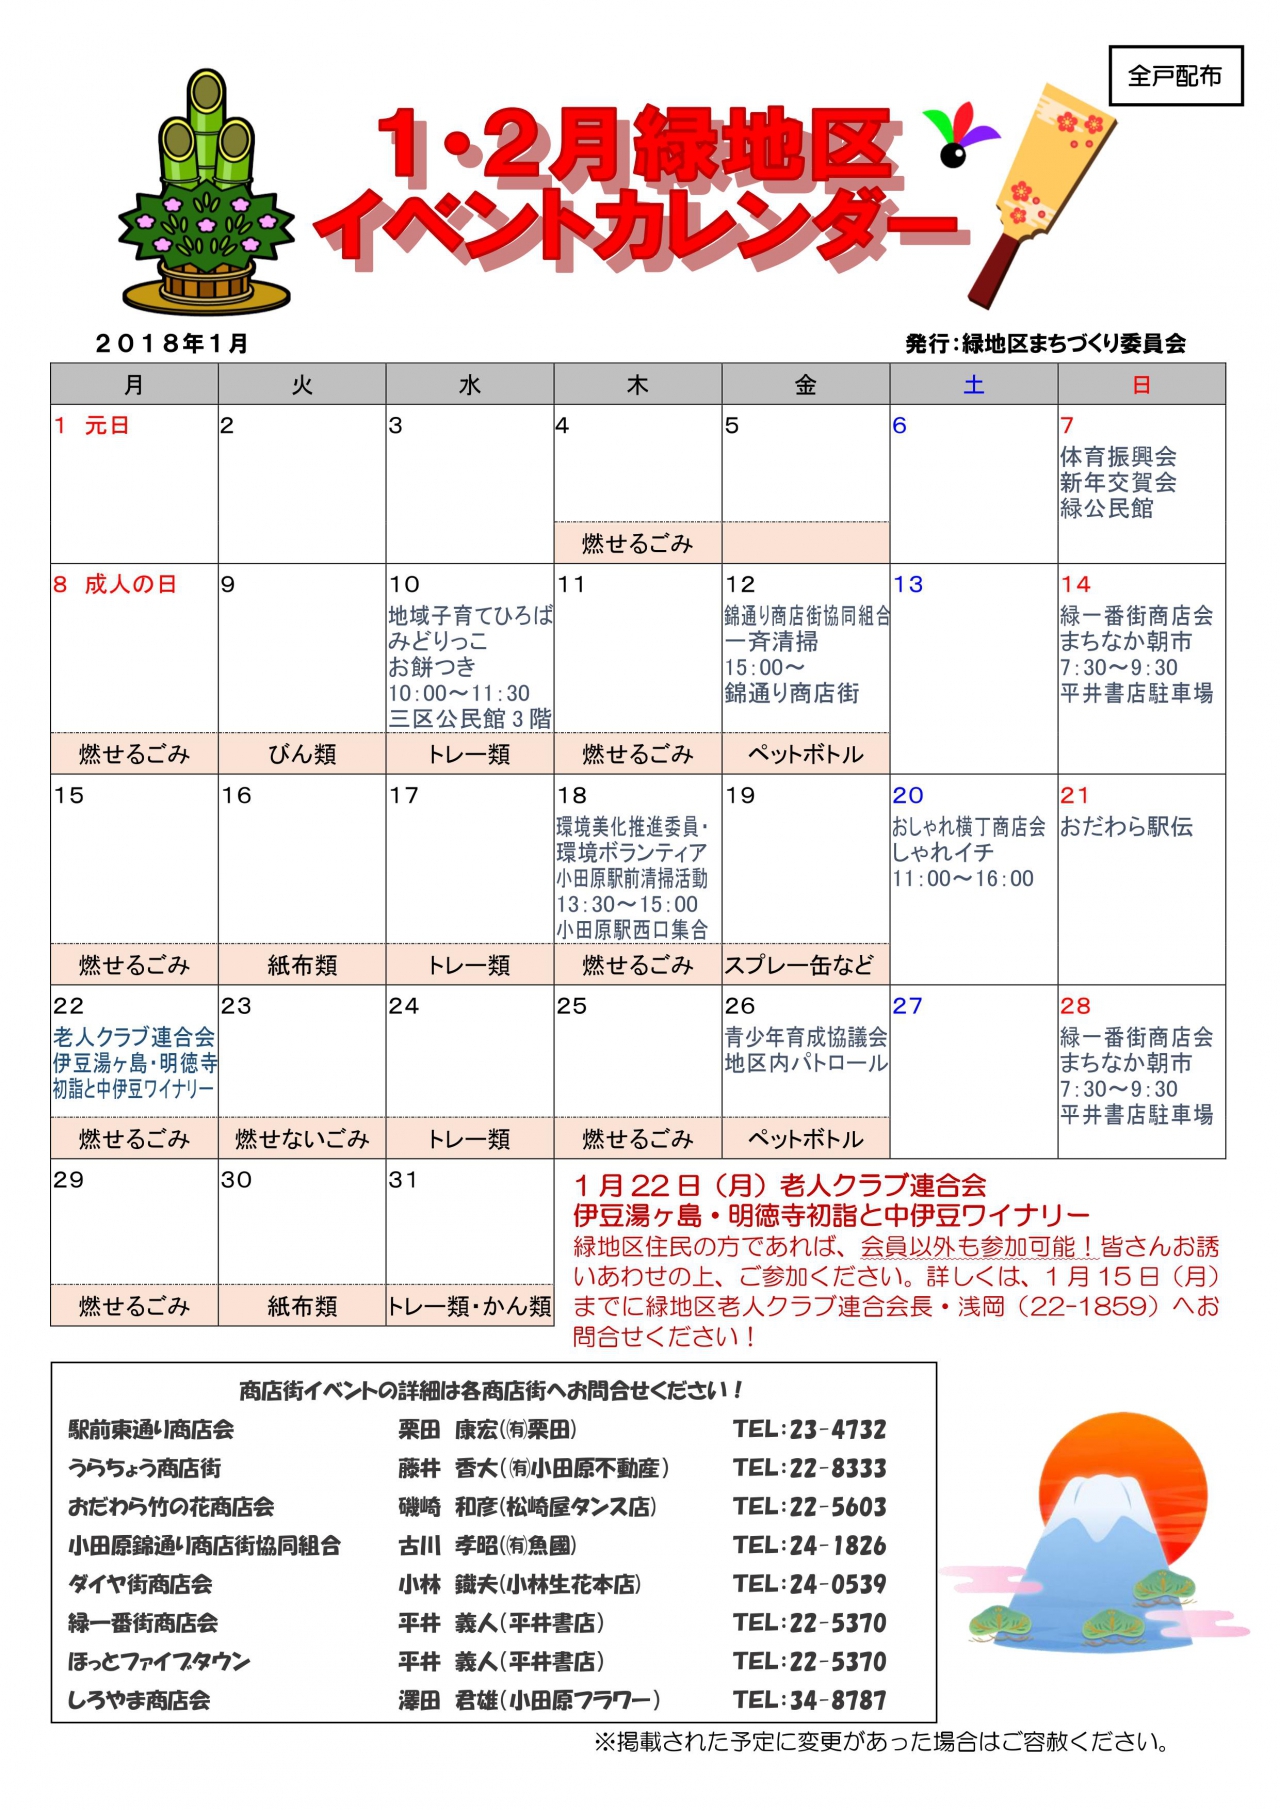 緑地区イベントカレンダー 1月2月発行 各自治会からのお知らせ 小田原自治会総連合